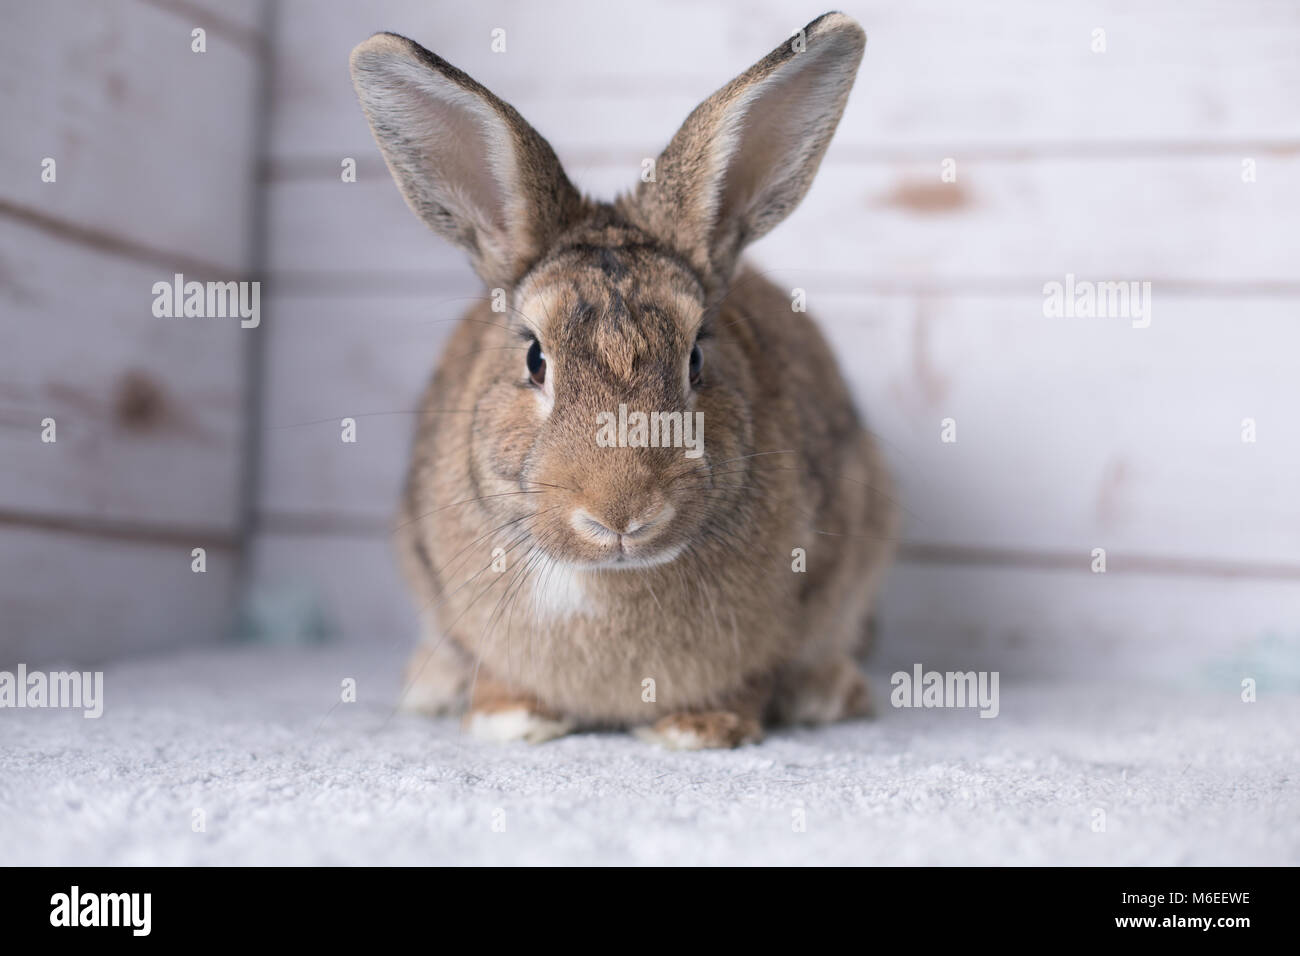 Belle petite bunny sur un tapis à la maison Banque D'Images